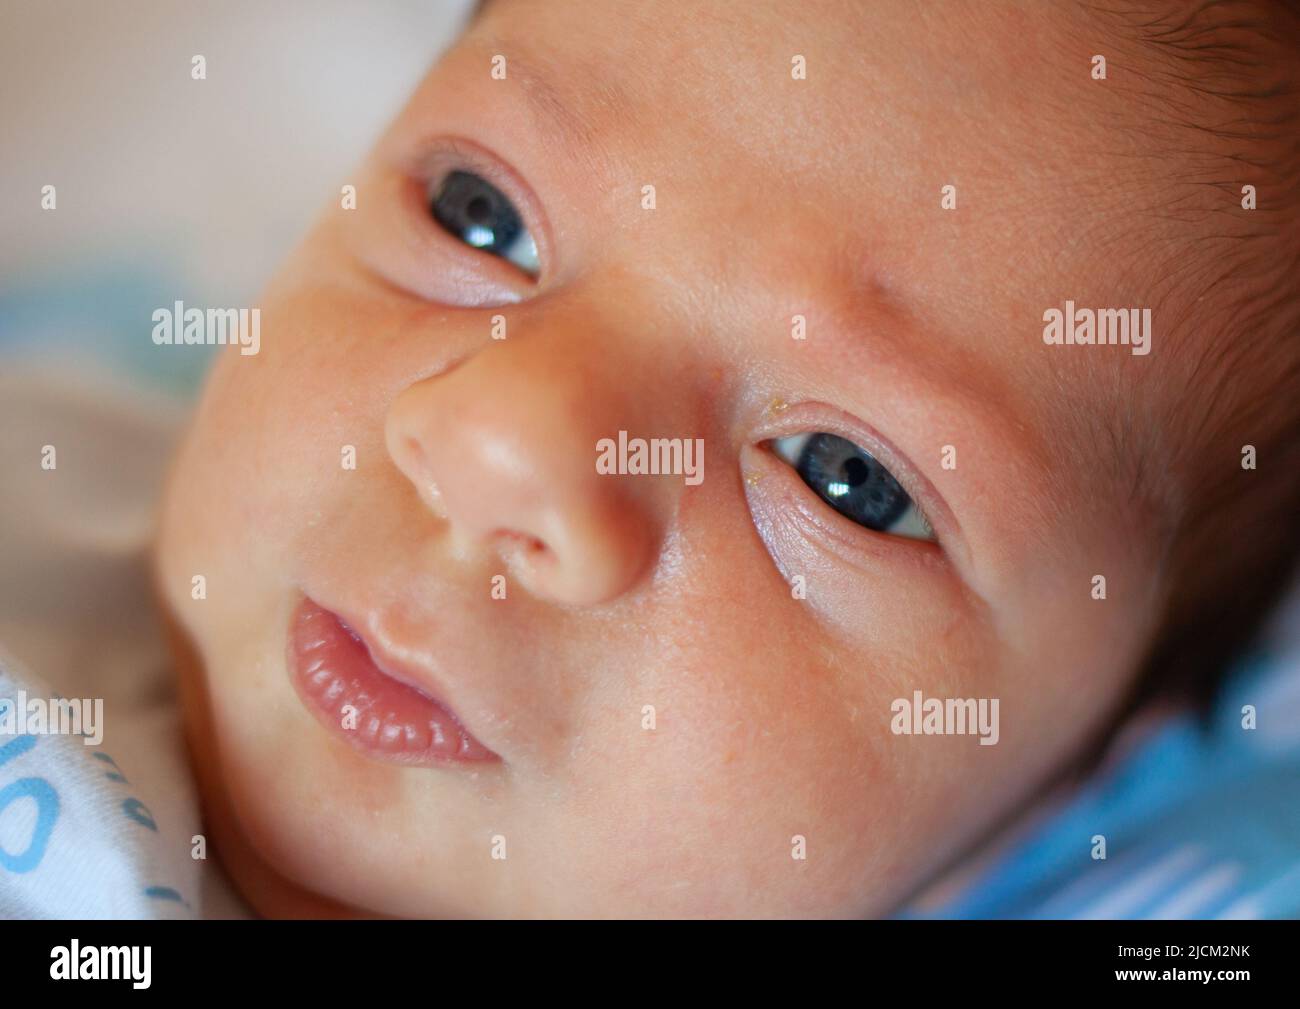 Dettaglio dell'occhio di un neonato di pochi giorni. Concetto medico per quanto riguarda la vista dei bambini pediatrici. Foto Stock